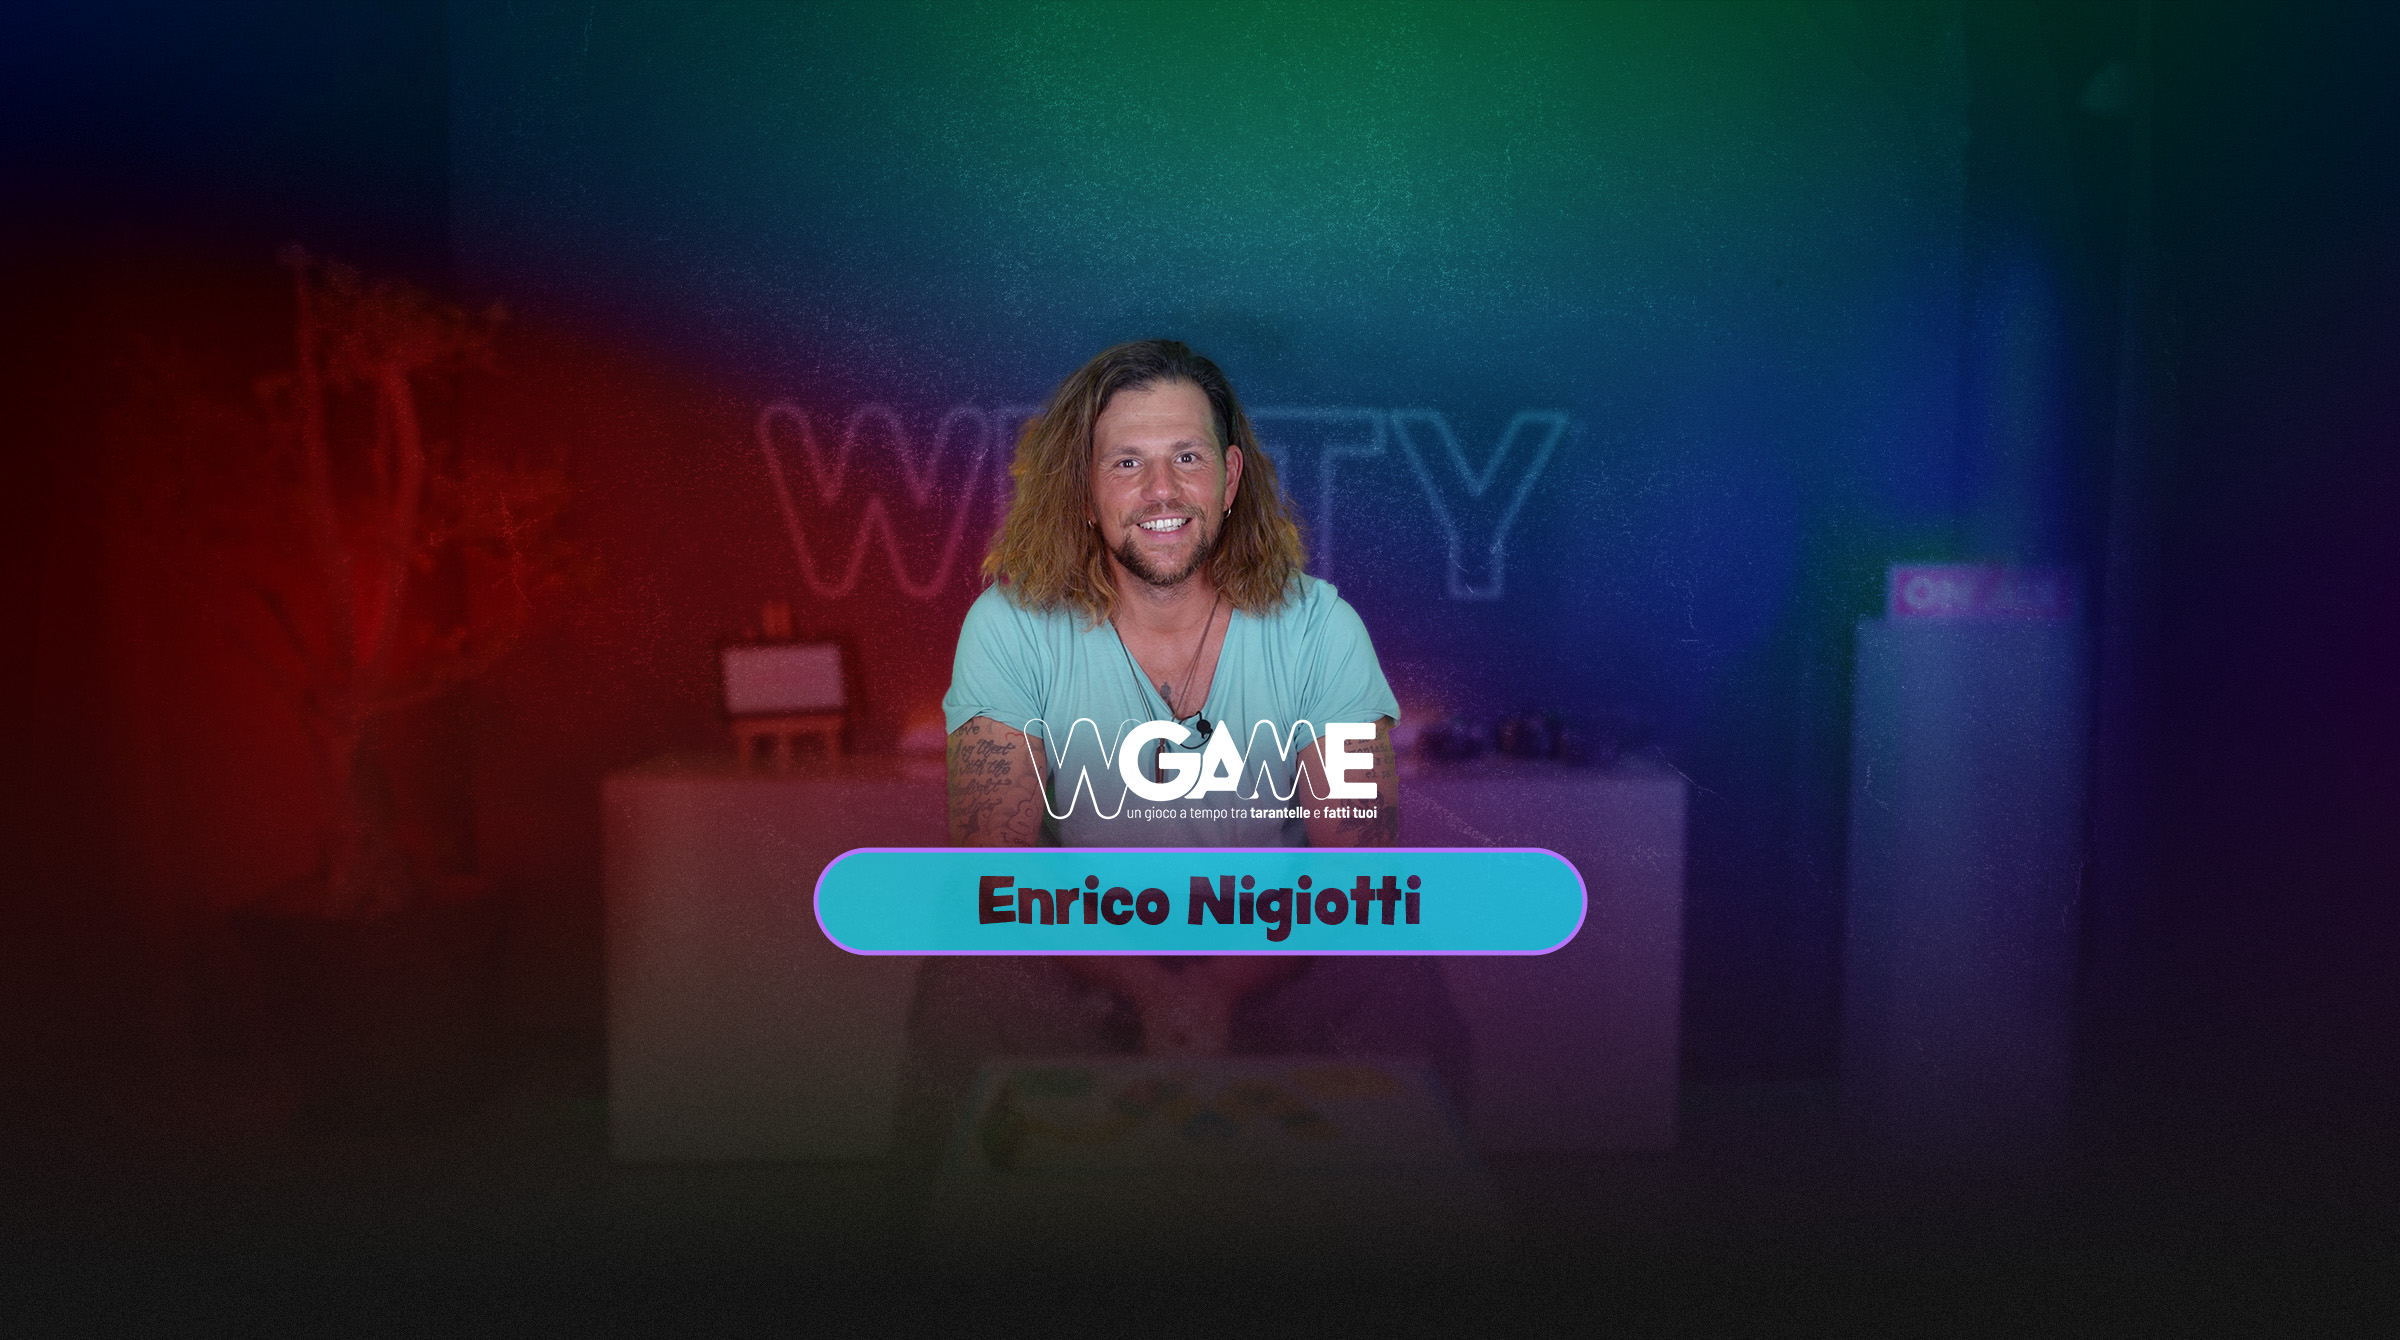 WITTY_W Game Enrico Nigiotti SLIDER